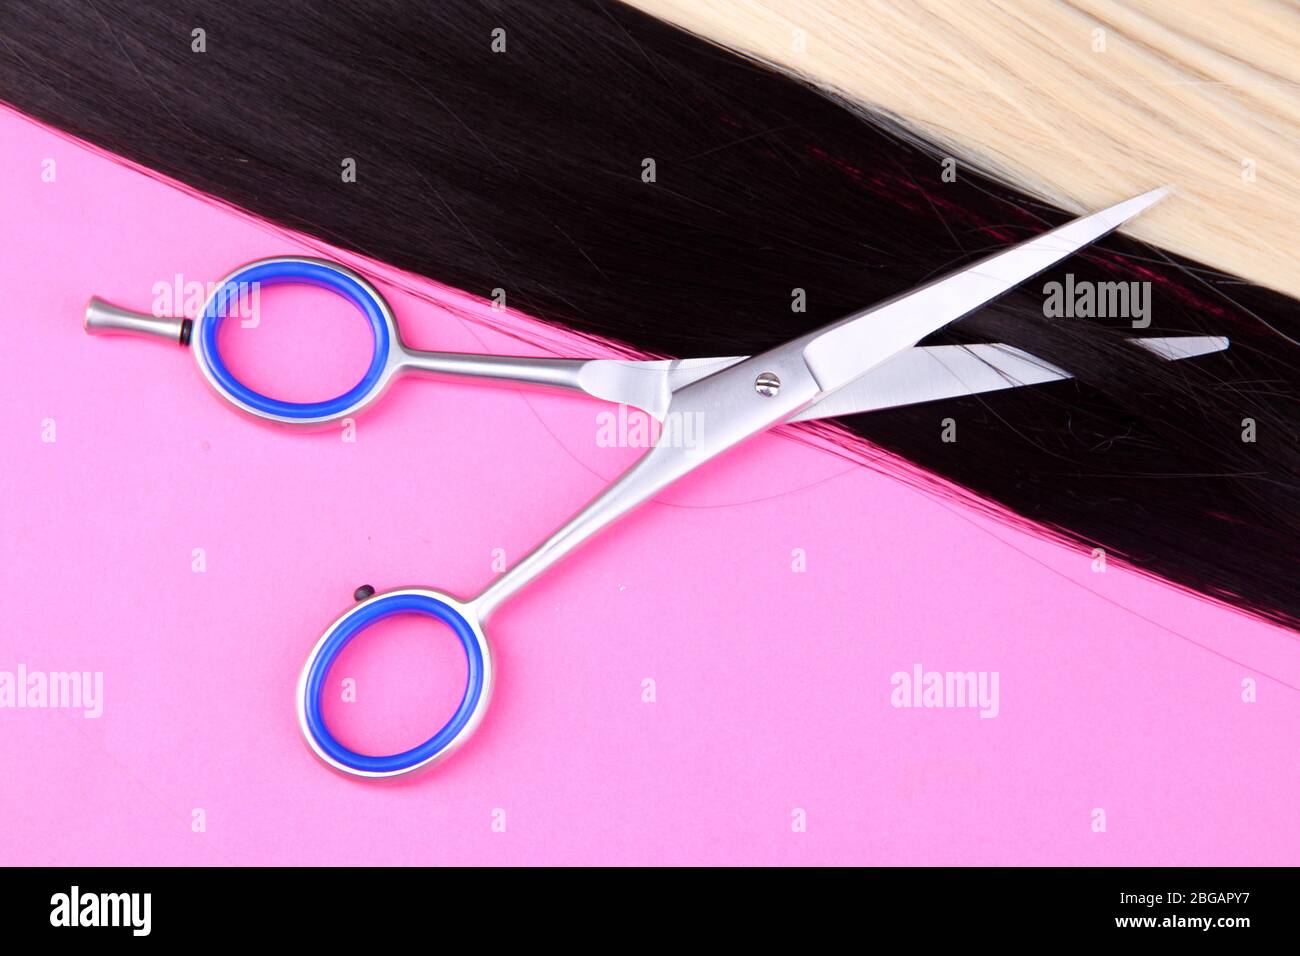 Lunghi capelli neri e biondi con forbici su fondo rosa Foto Stock